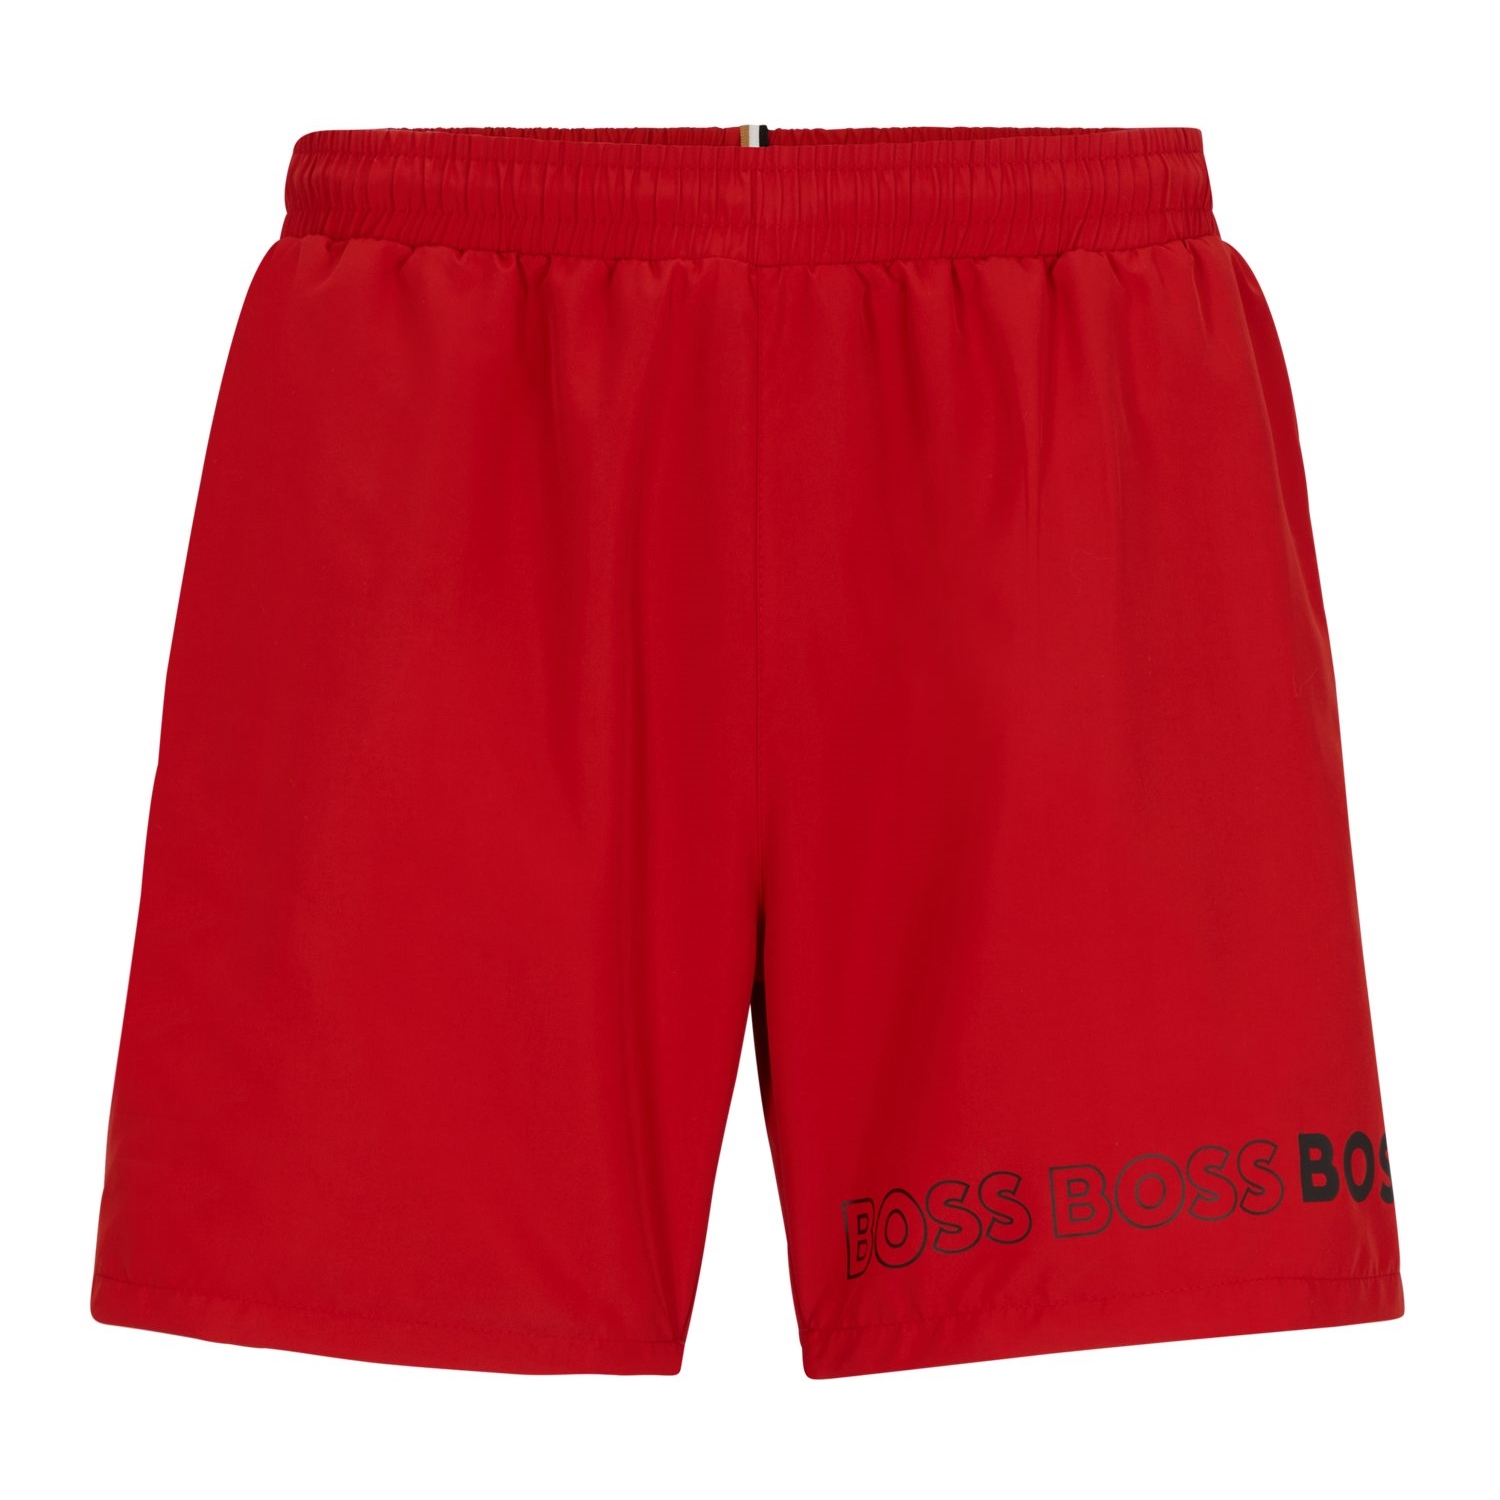 Купальные шорты Hugo Boss With Repeat Logos, красный купальные шорты hugo boss with repeat logos темно серый